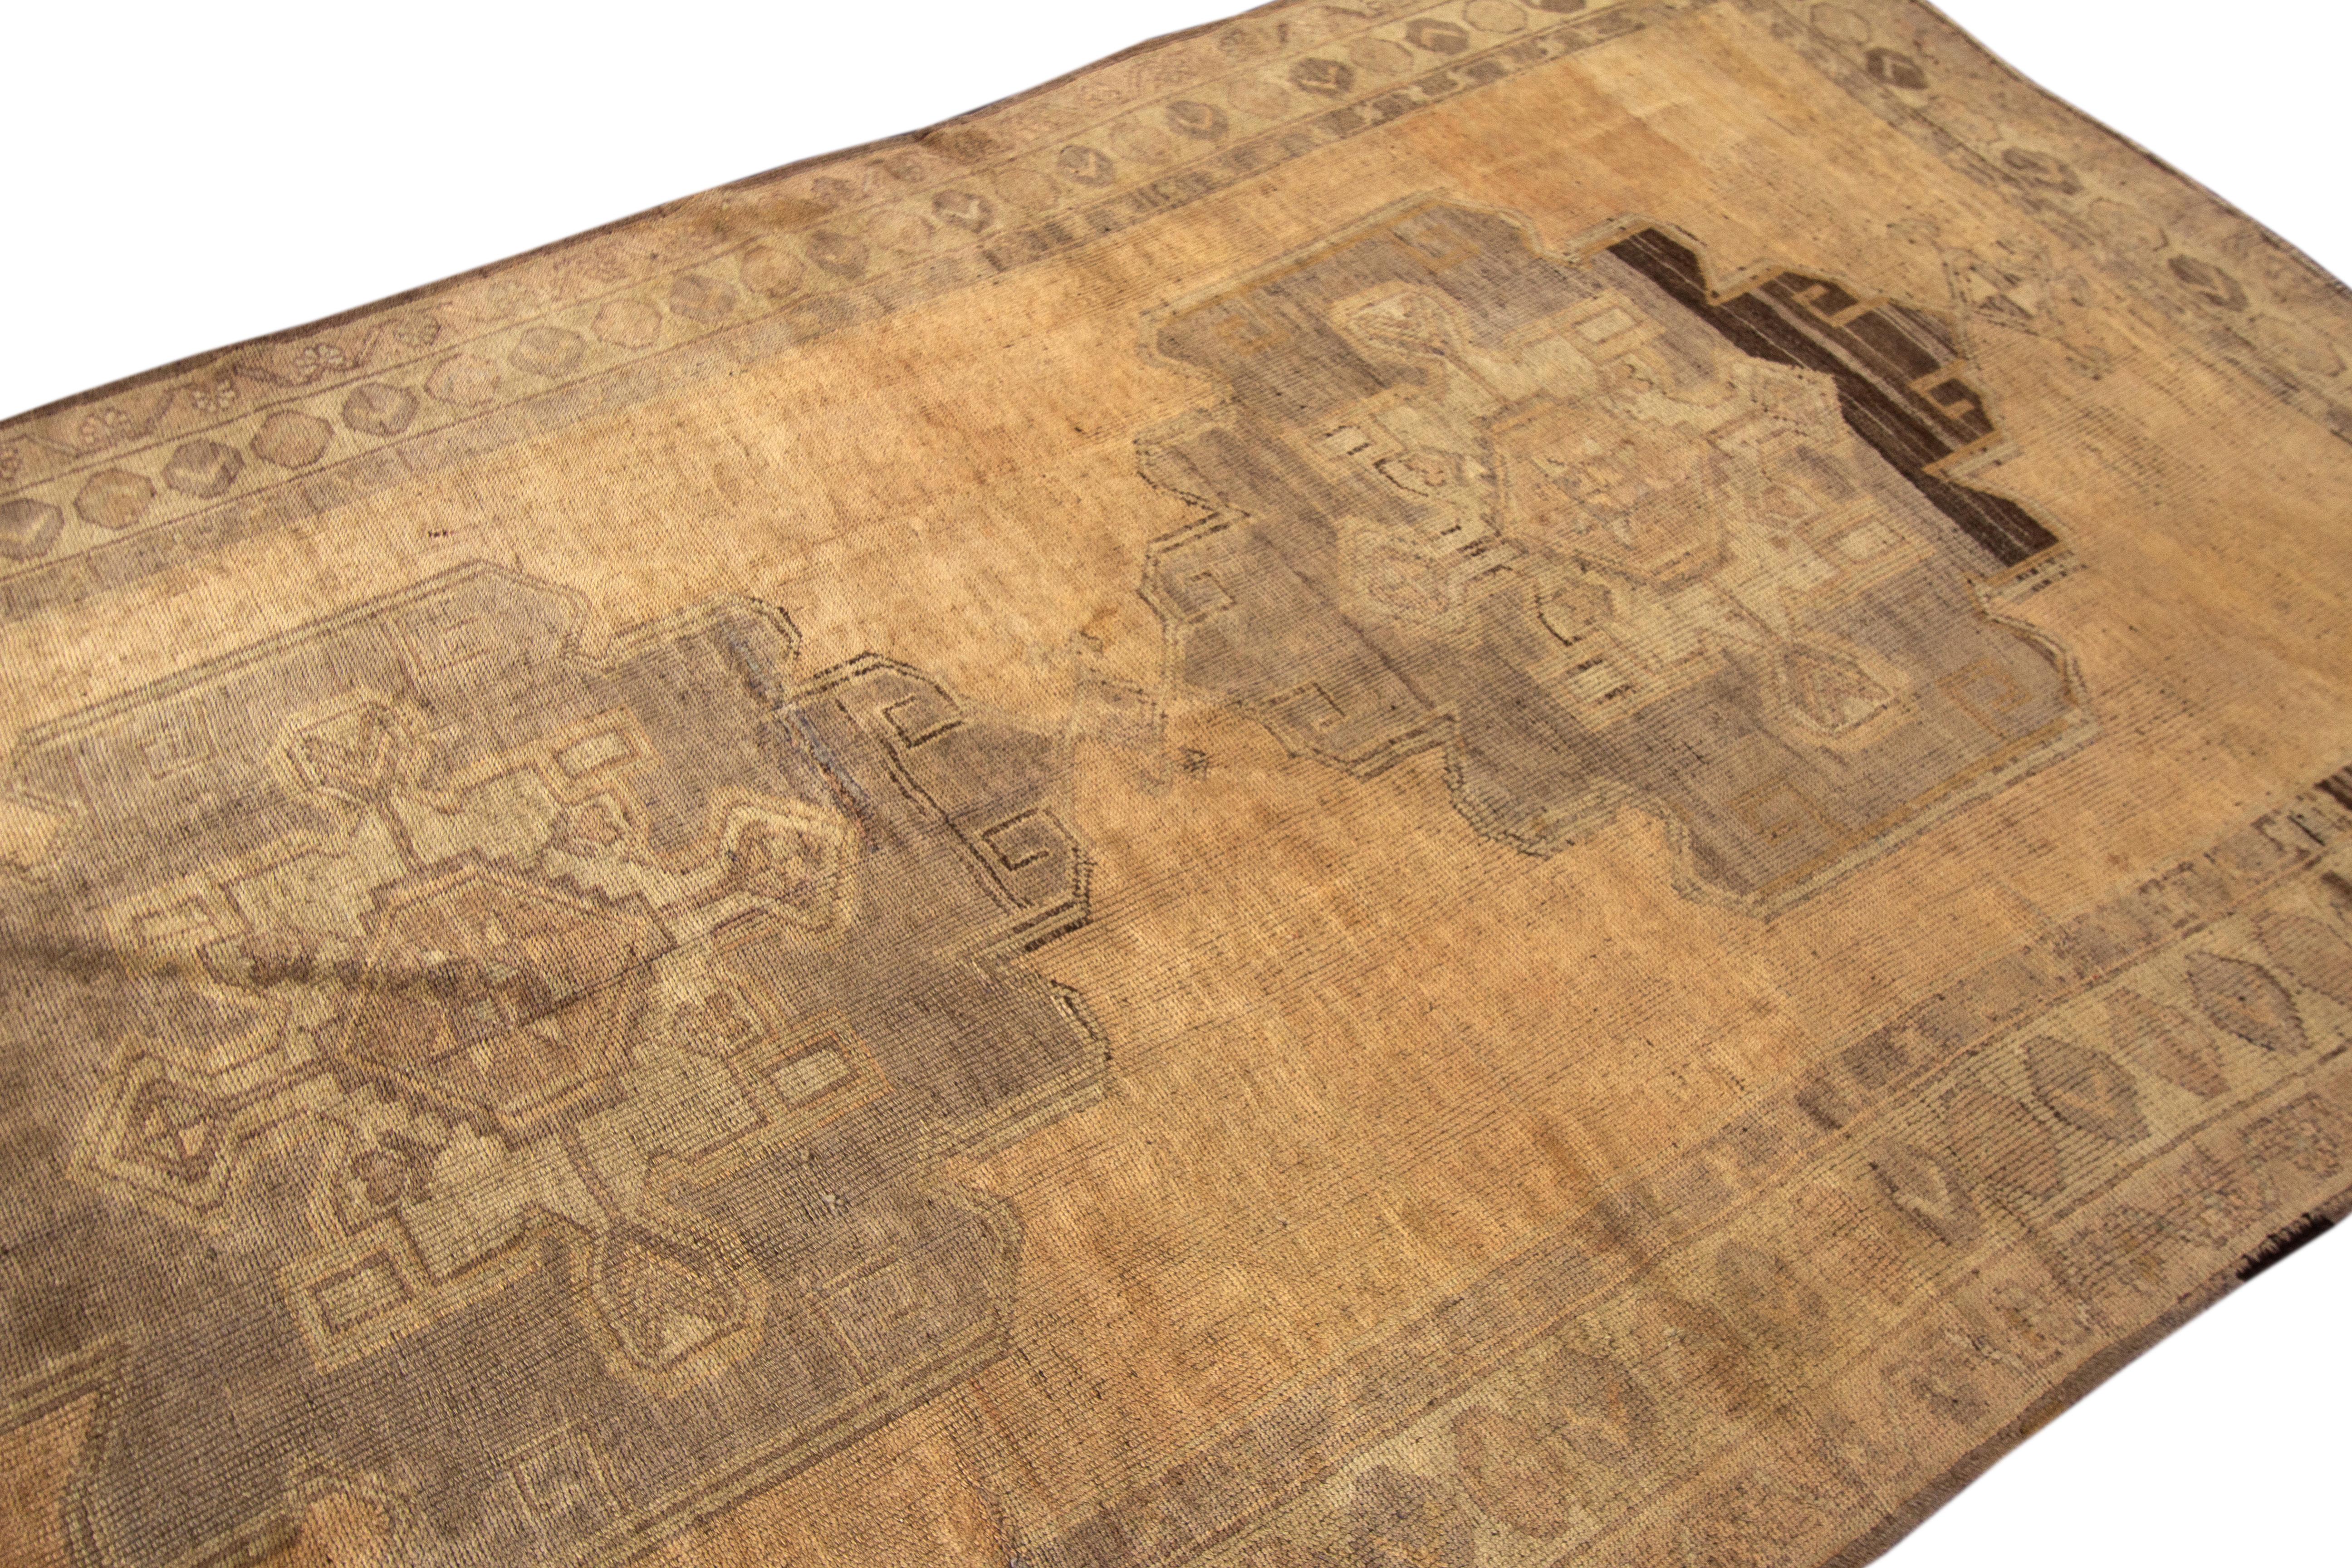 Schöne antike türkische Khotan handgeknüpfte Wolle Teppich mit einem tan Feld. Dieser Khotan hat graue, braune und blaue Akzente in einem wunderschönen, floralen Medaillonmuster.

Dieser Läufer misst 5'2